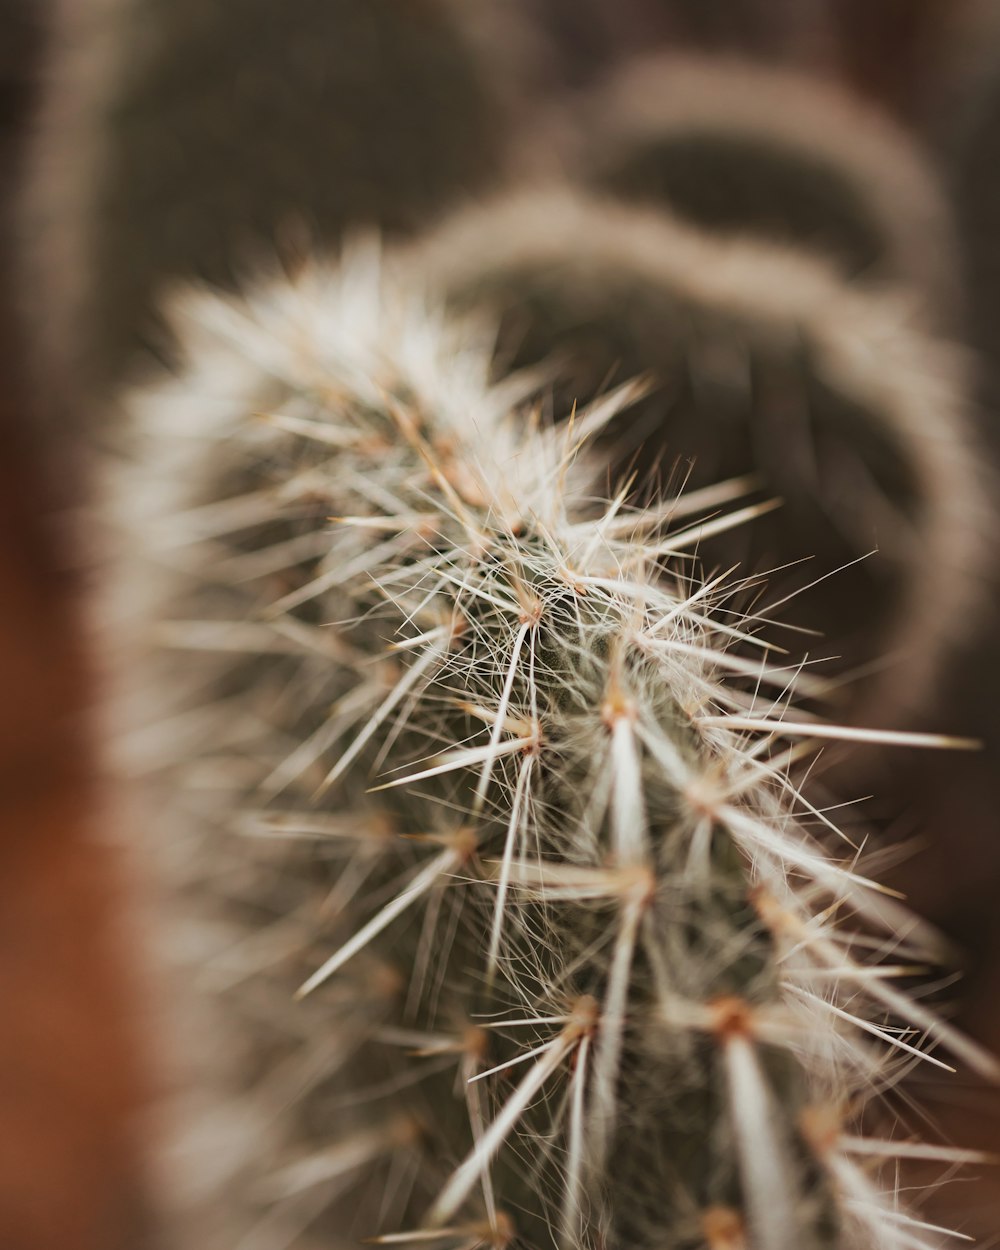 Un primer plano de una planta de cactus con agujas largas